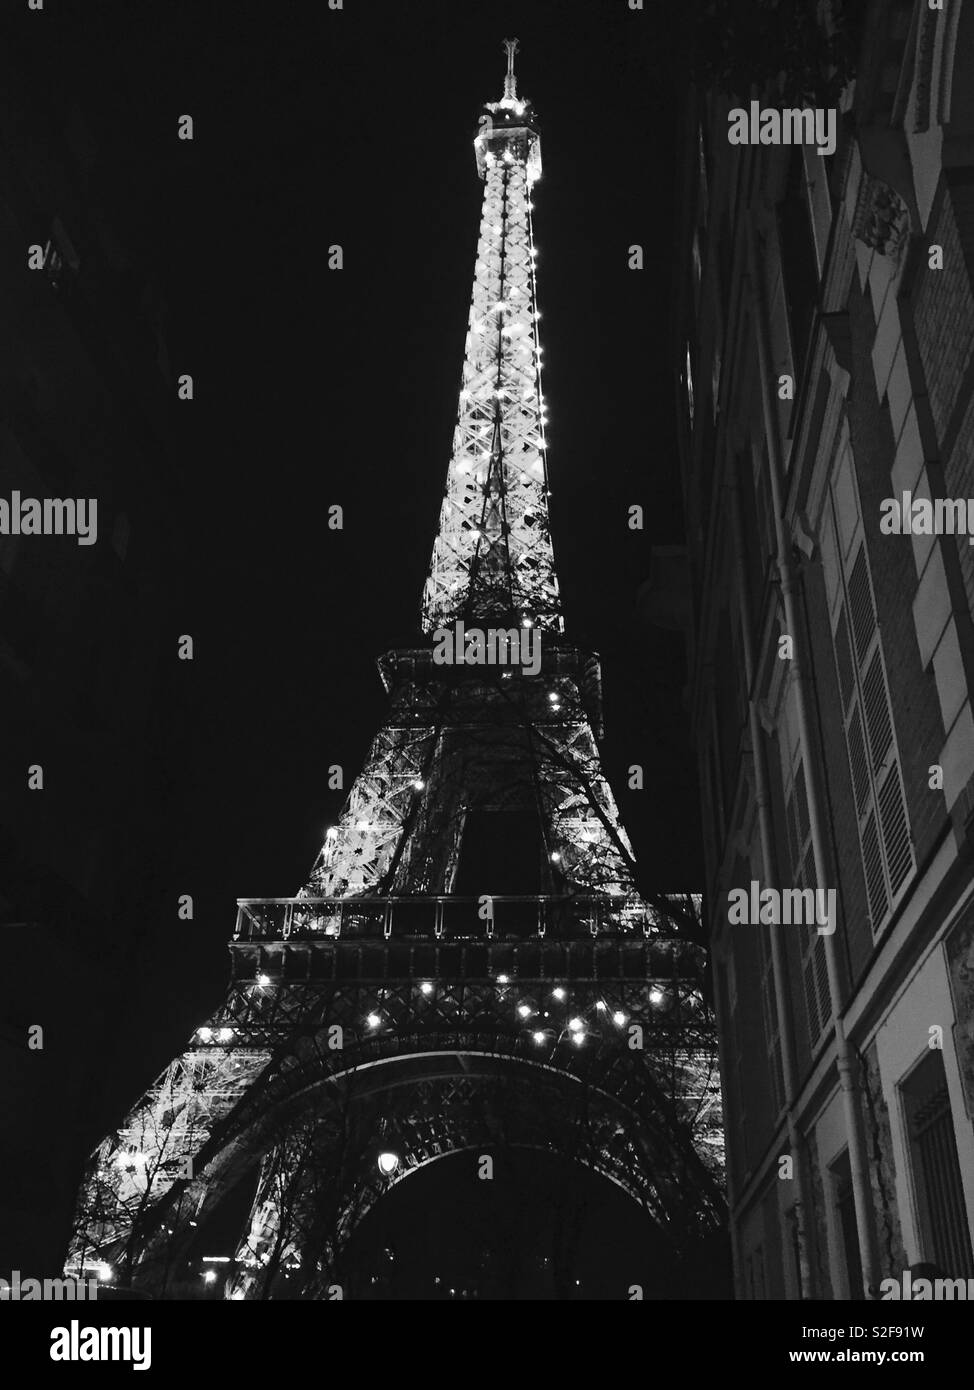 eiffel tower at night wallpaper tumblr